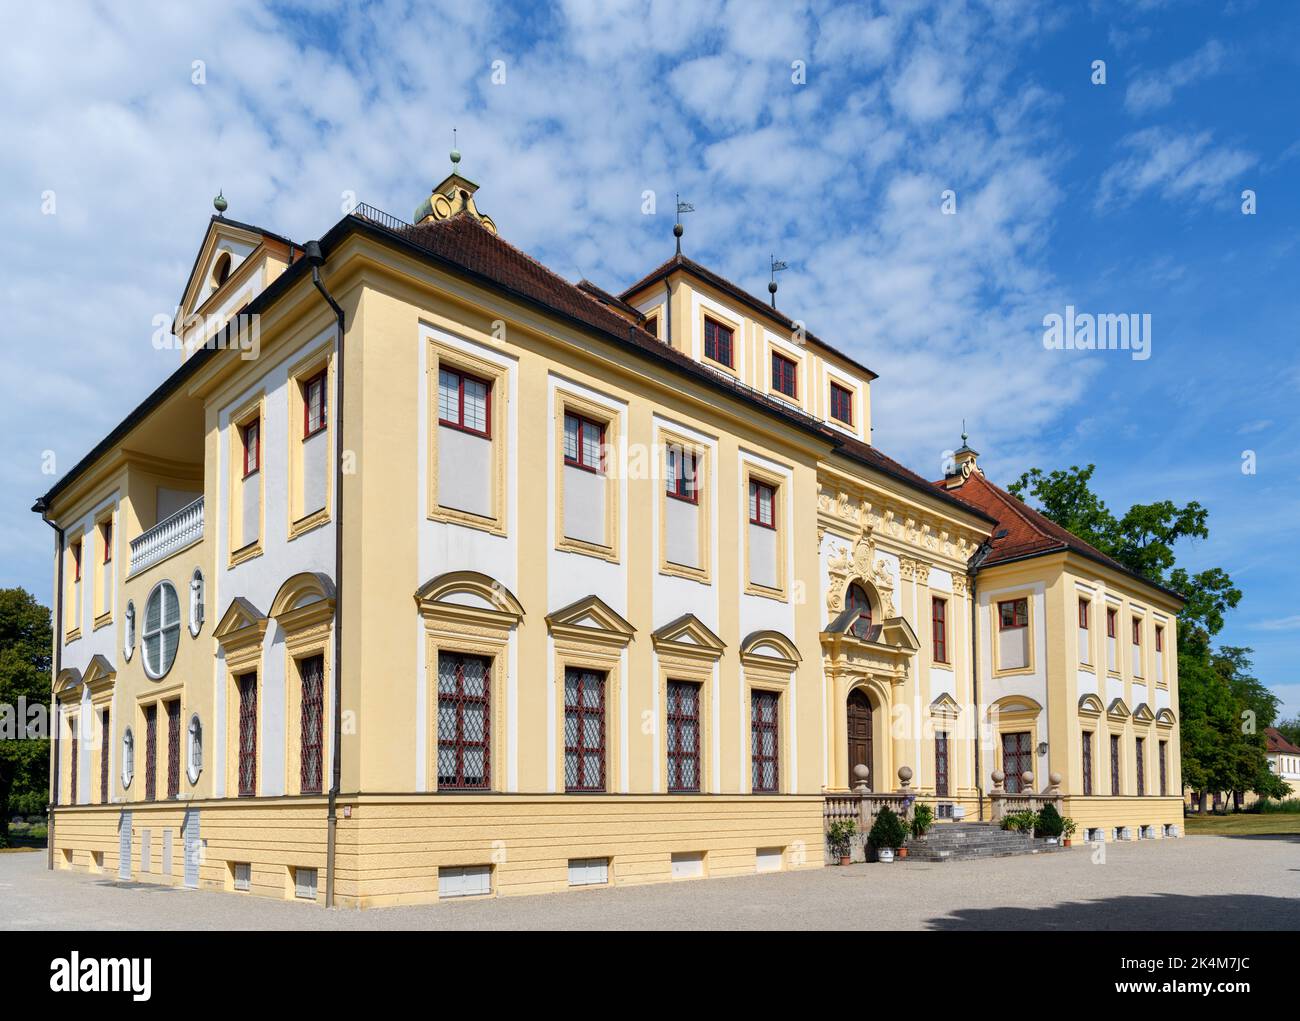 Lustheim Palace (Schloss Lustheim), Schleissheim palace complex, Munich, Bavaria, Germany Stock Photo